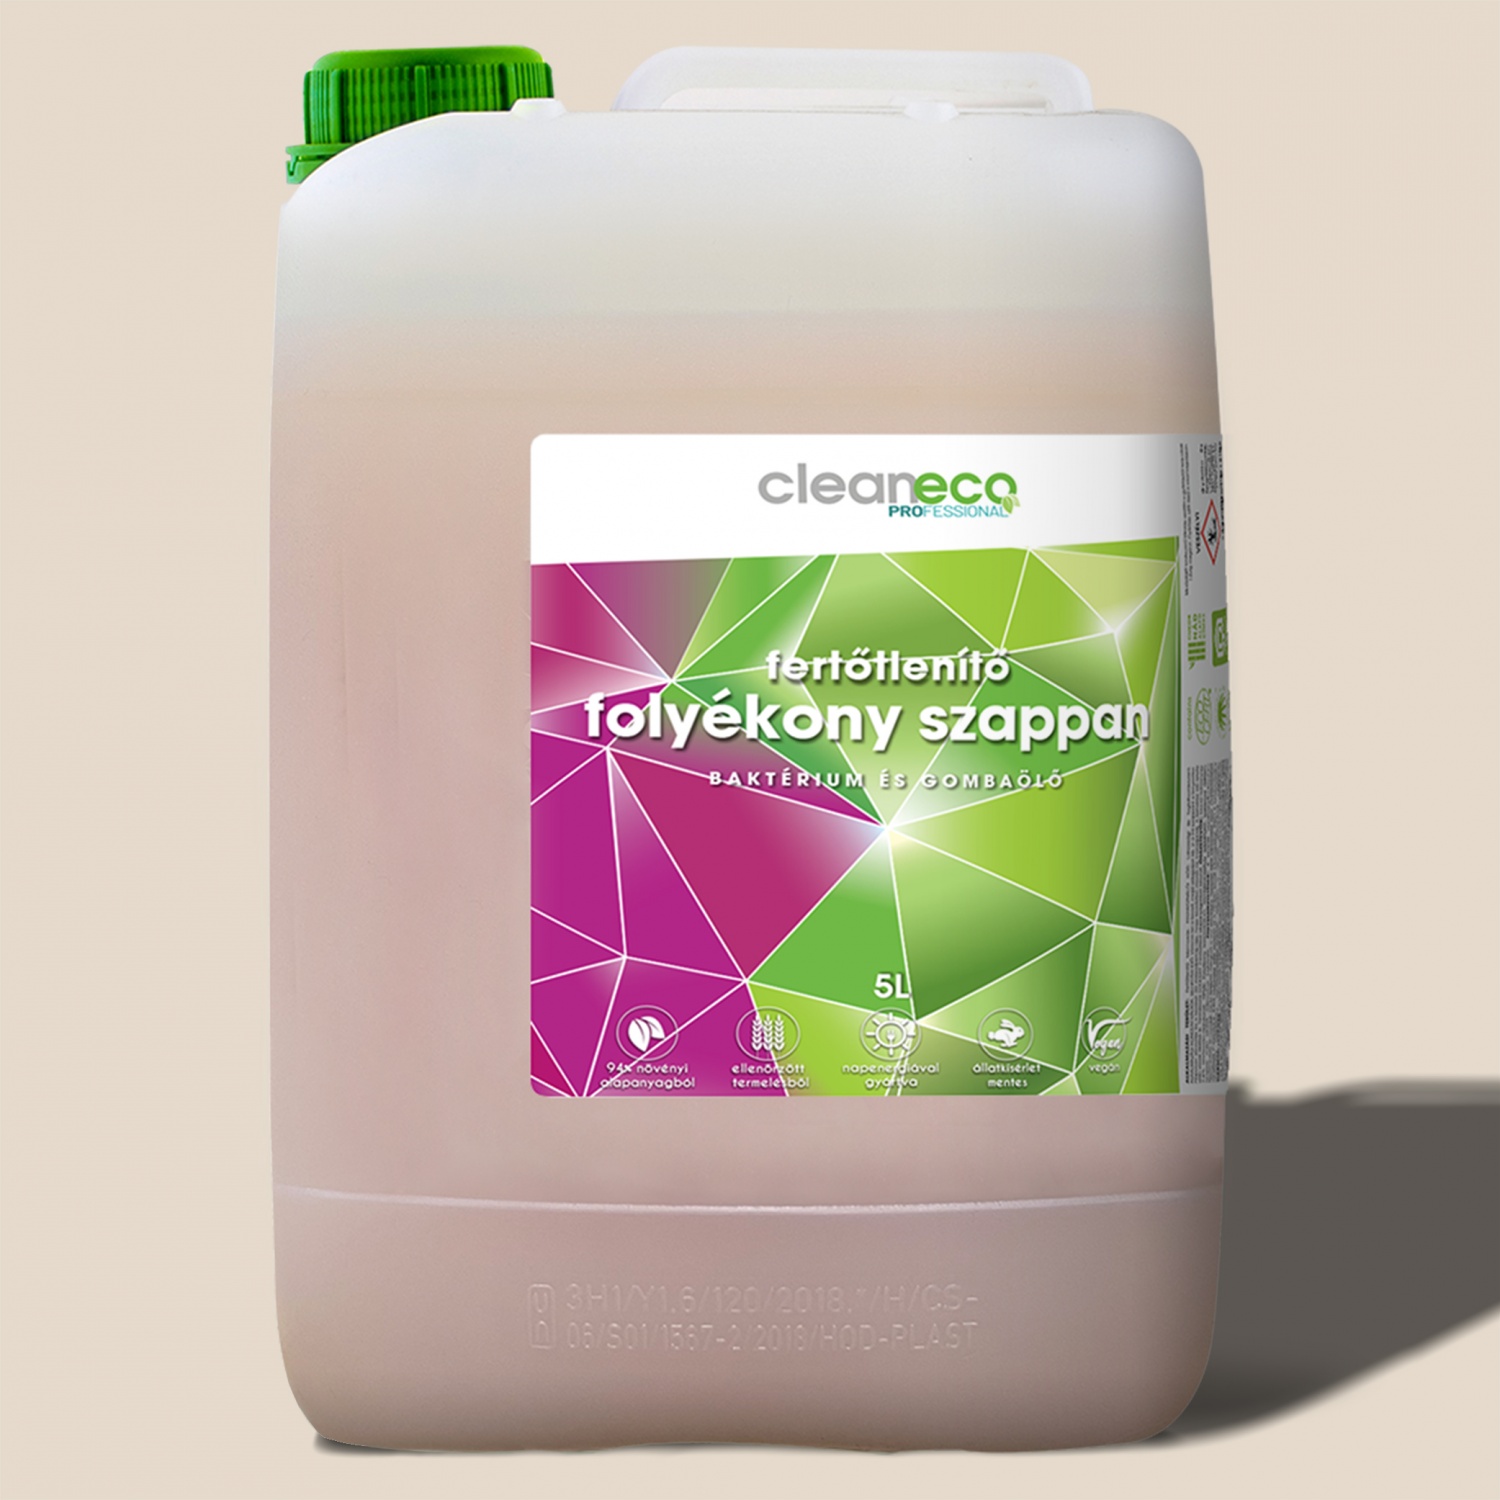 Cleaneco Fertőtlenítő folyékony szappan XXL, 5liter